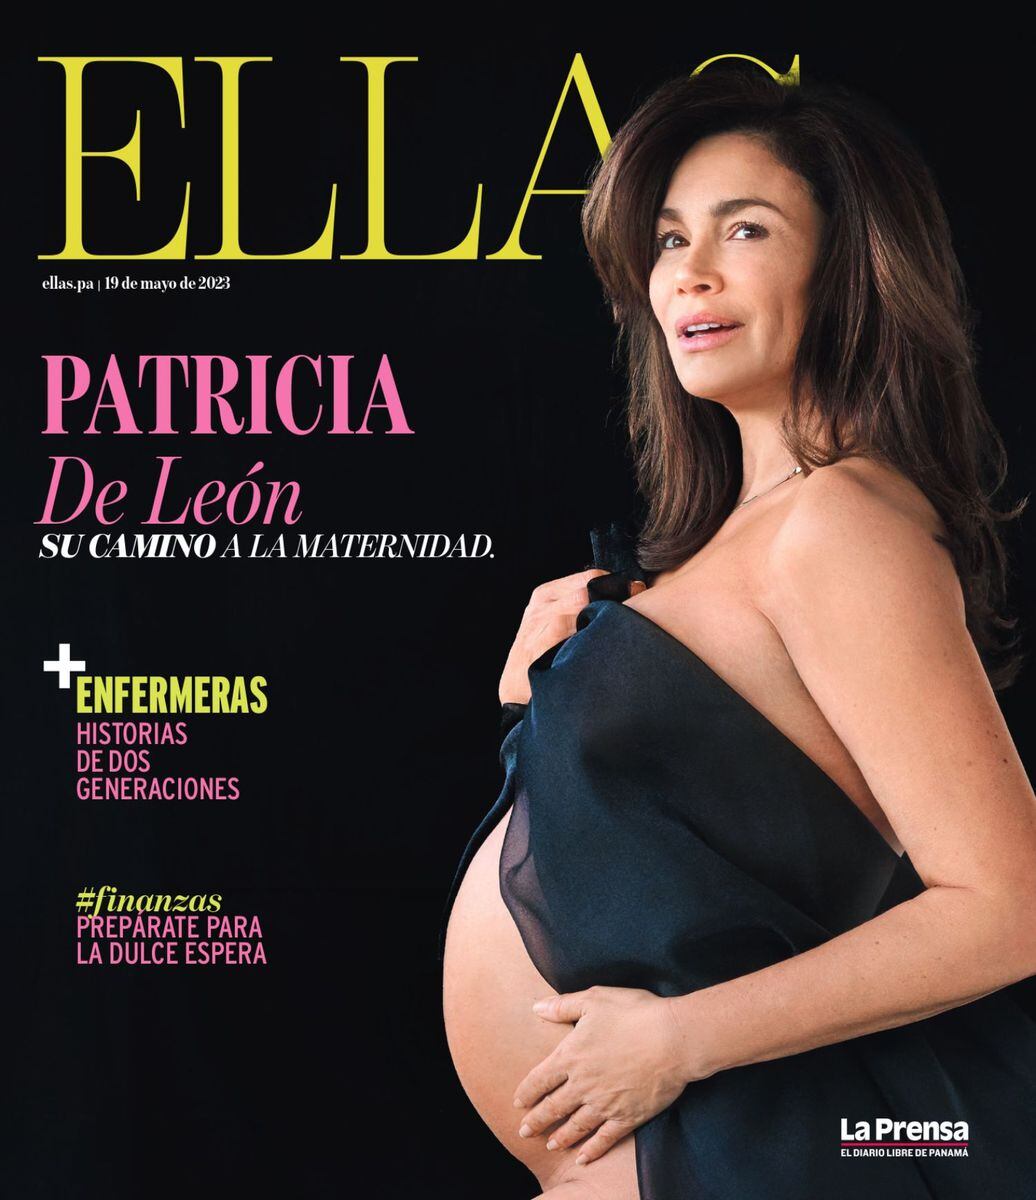 La actriz Patricia De León y su camino a la maternidad que empezó hace 12 años con la congelación de sus óvulos